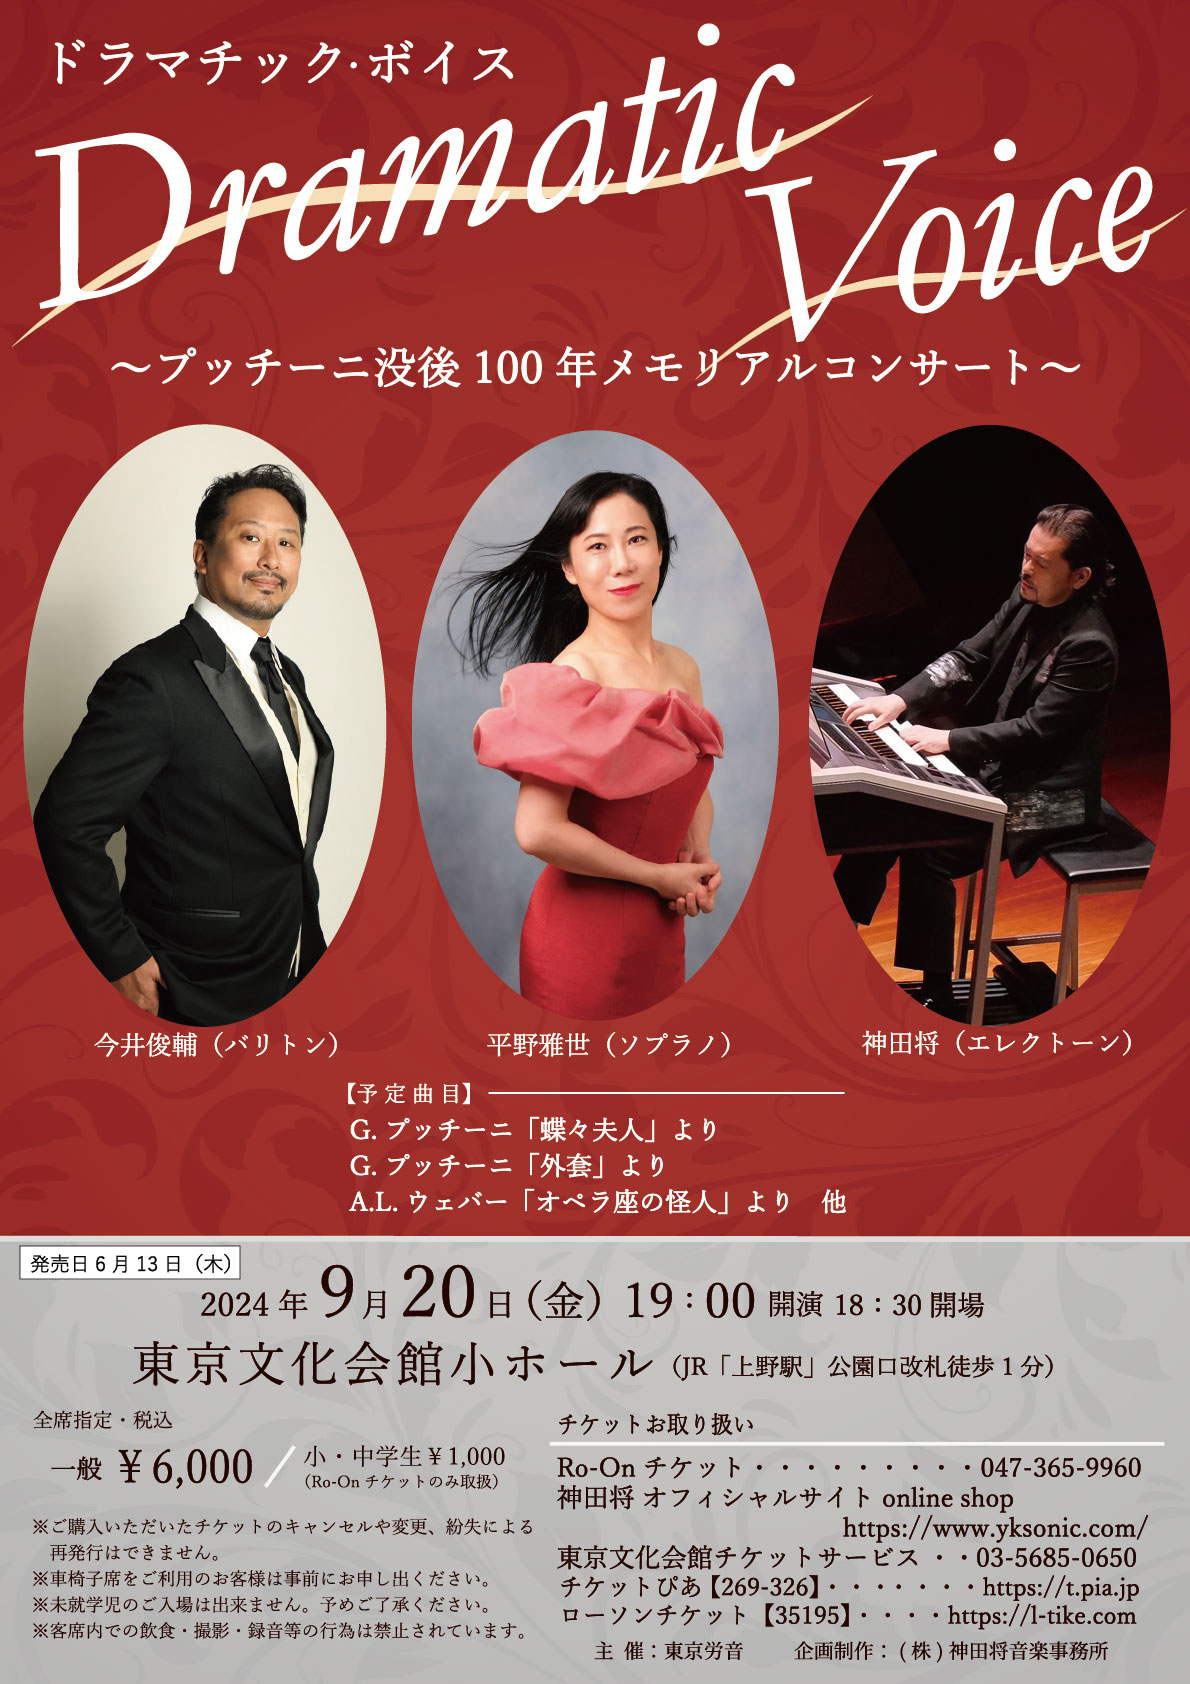 ドラマチックボイス 東京文化会館 コンサートのチラシ